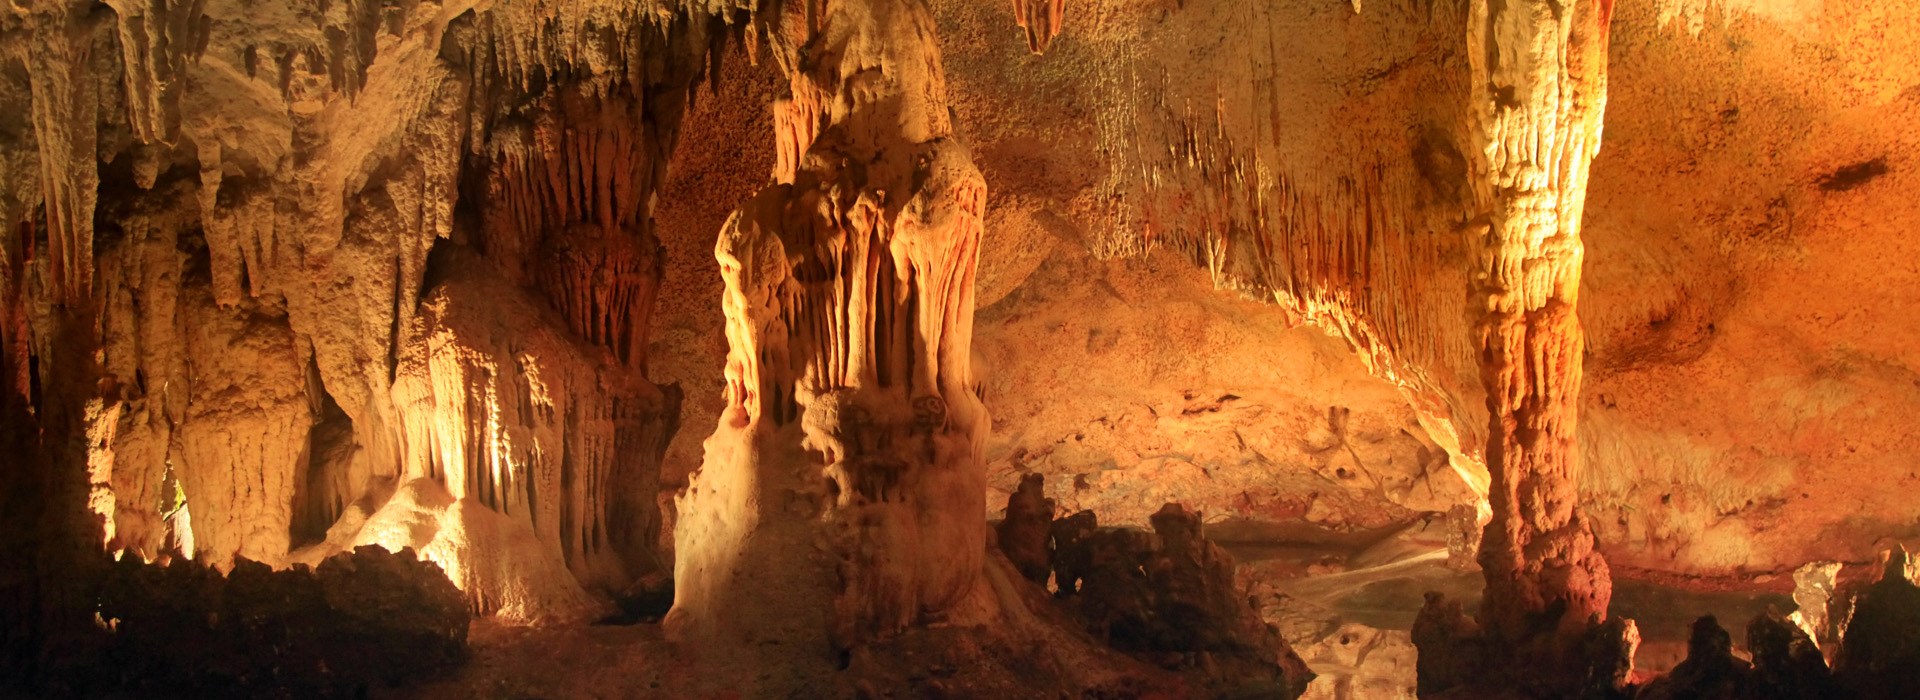 Visiter La Grotte des Merveilles - République Dominicaine